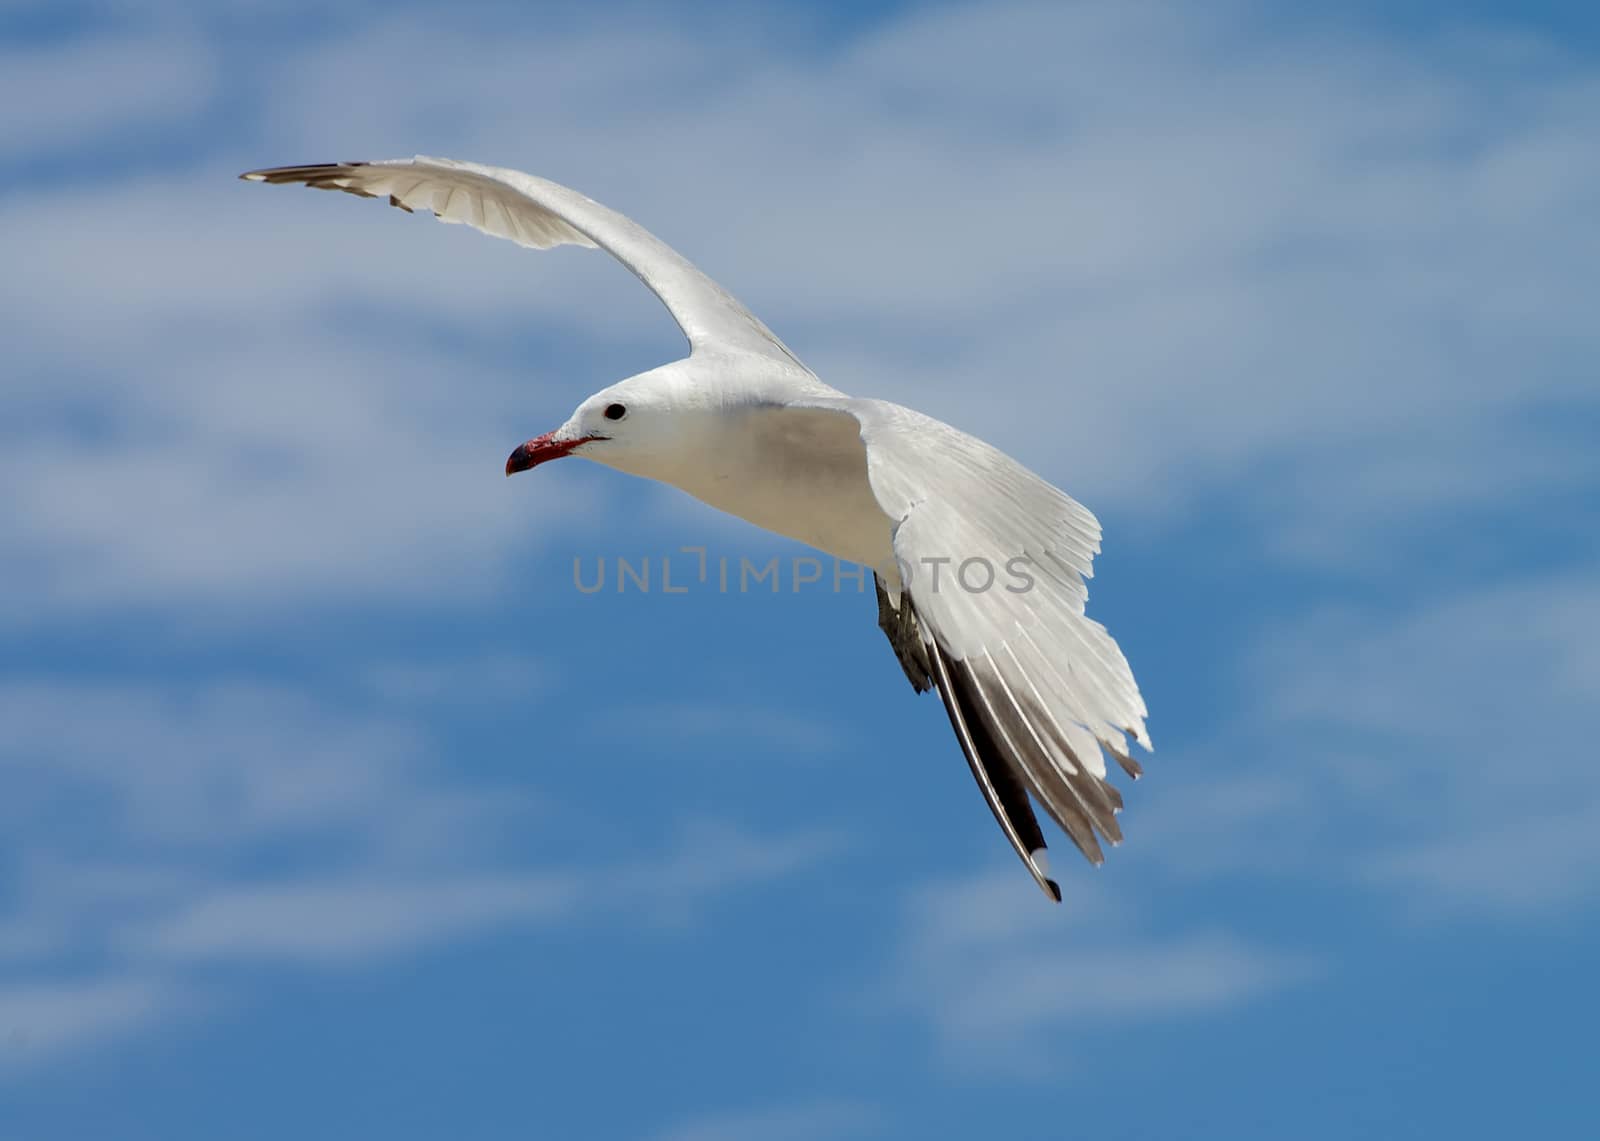 Seagull in Flight by zhekos